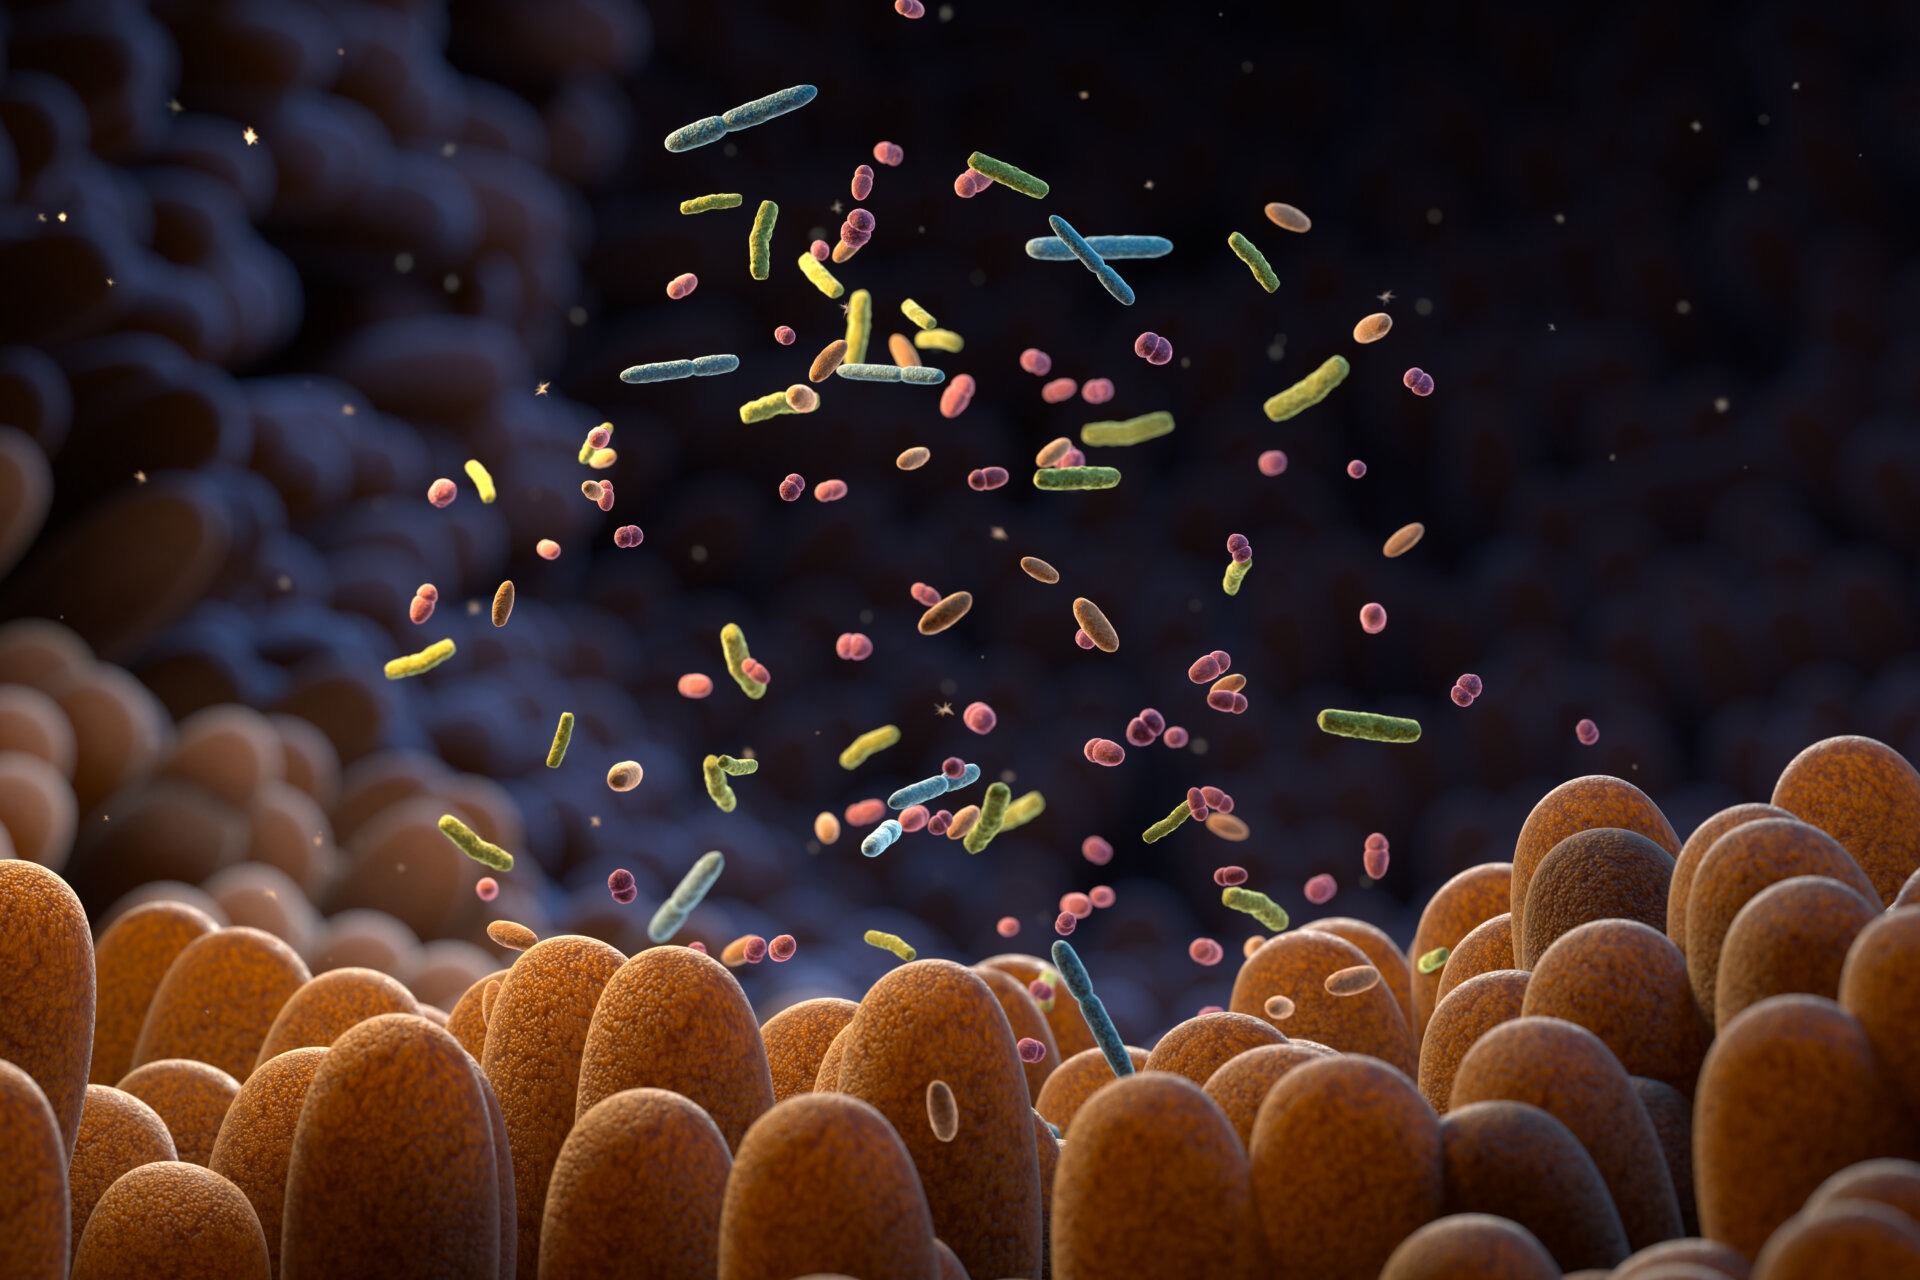 Γραφιστική απεικόνιση του ανθρώπινου μικροβιώματος και των βακτηρίων που «κατοικούν» σε αυτό.